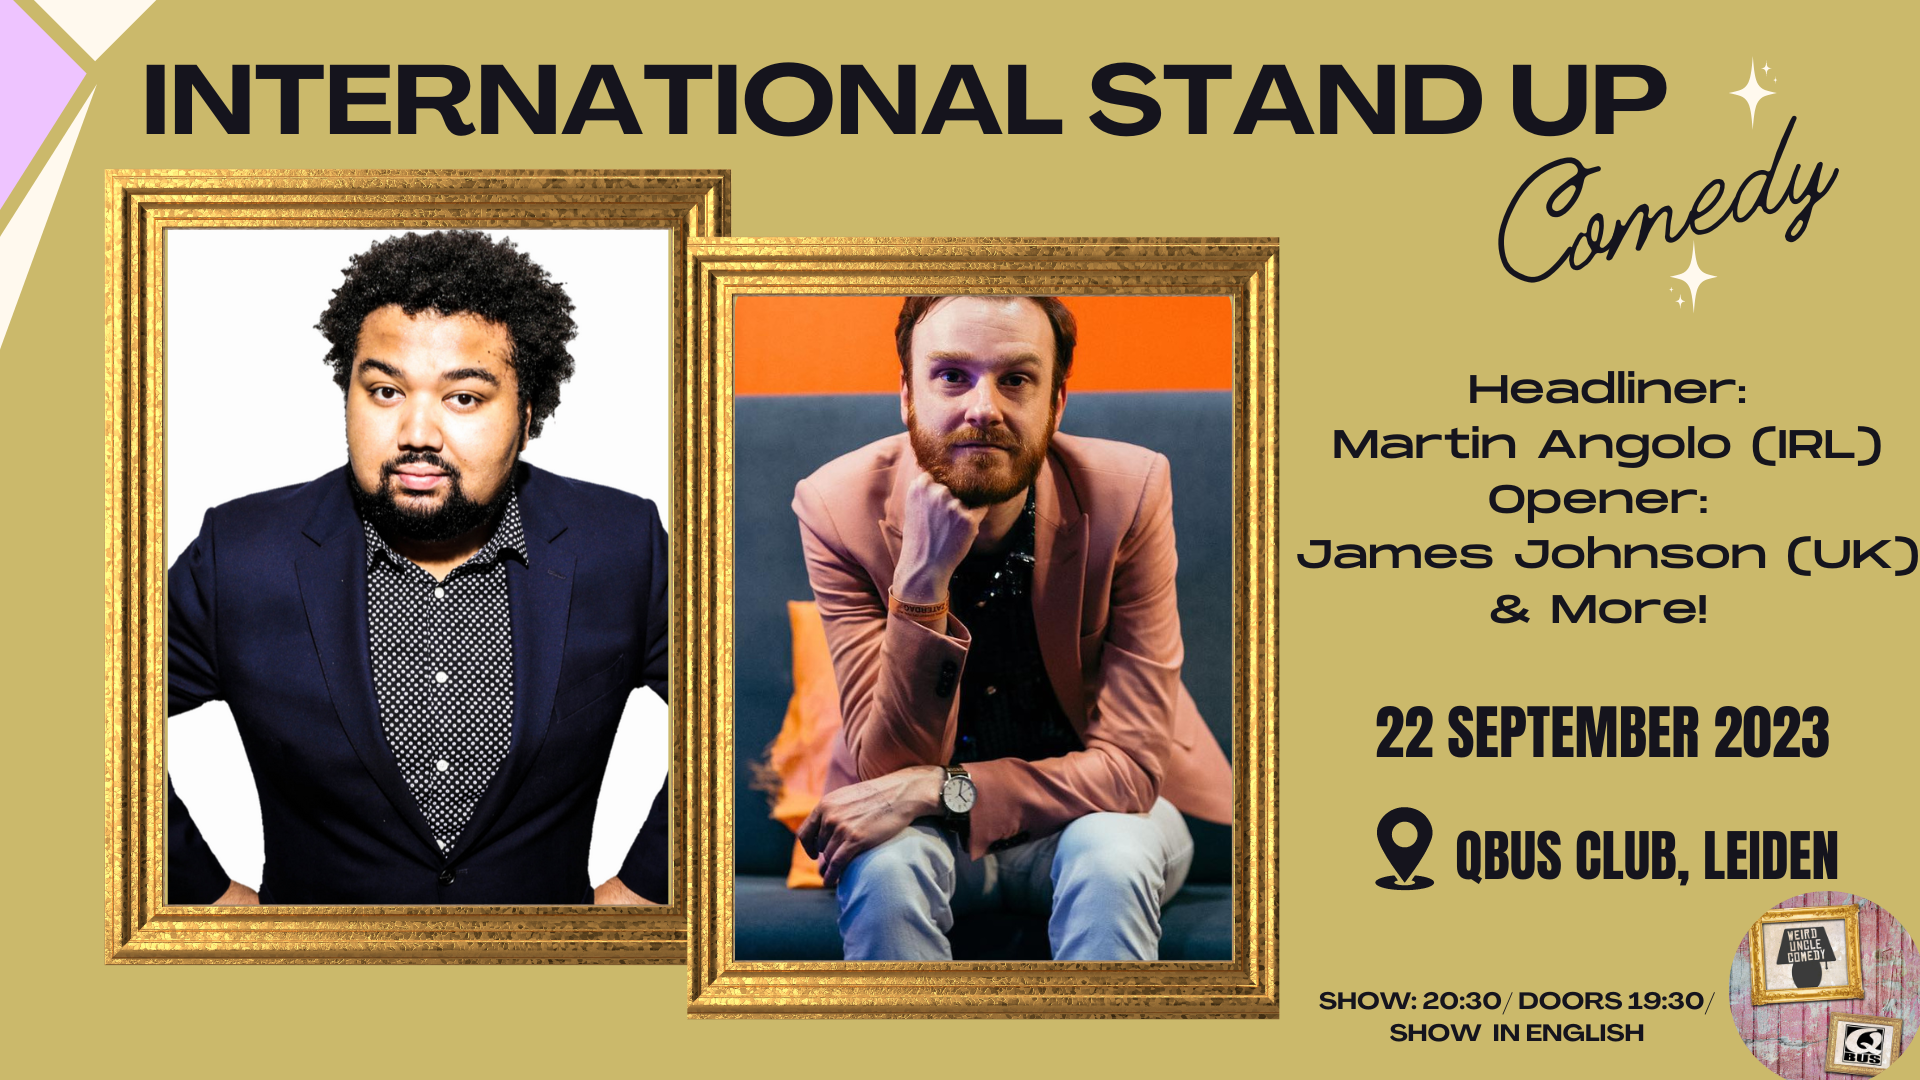 Ticket kopen voor evenement International Stand Up Comedy